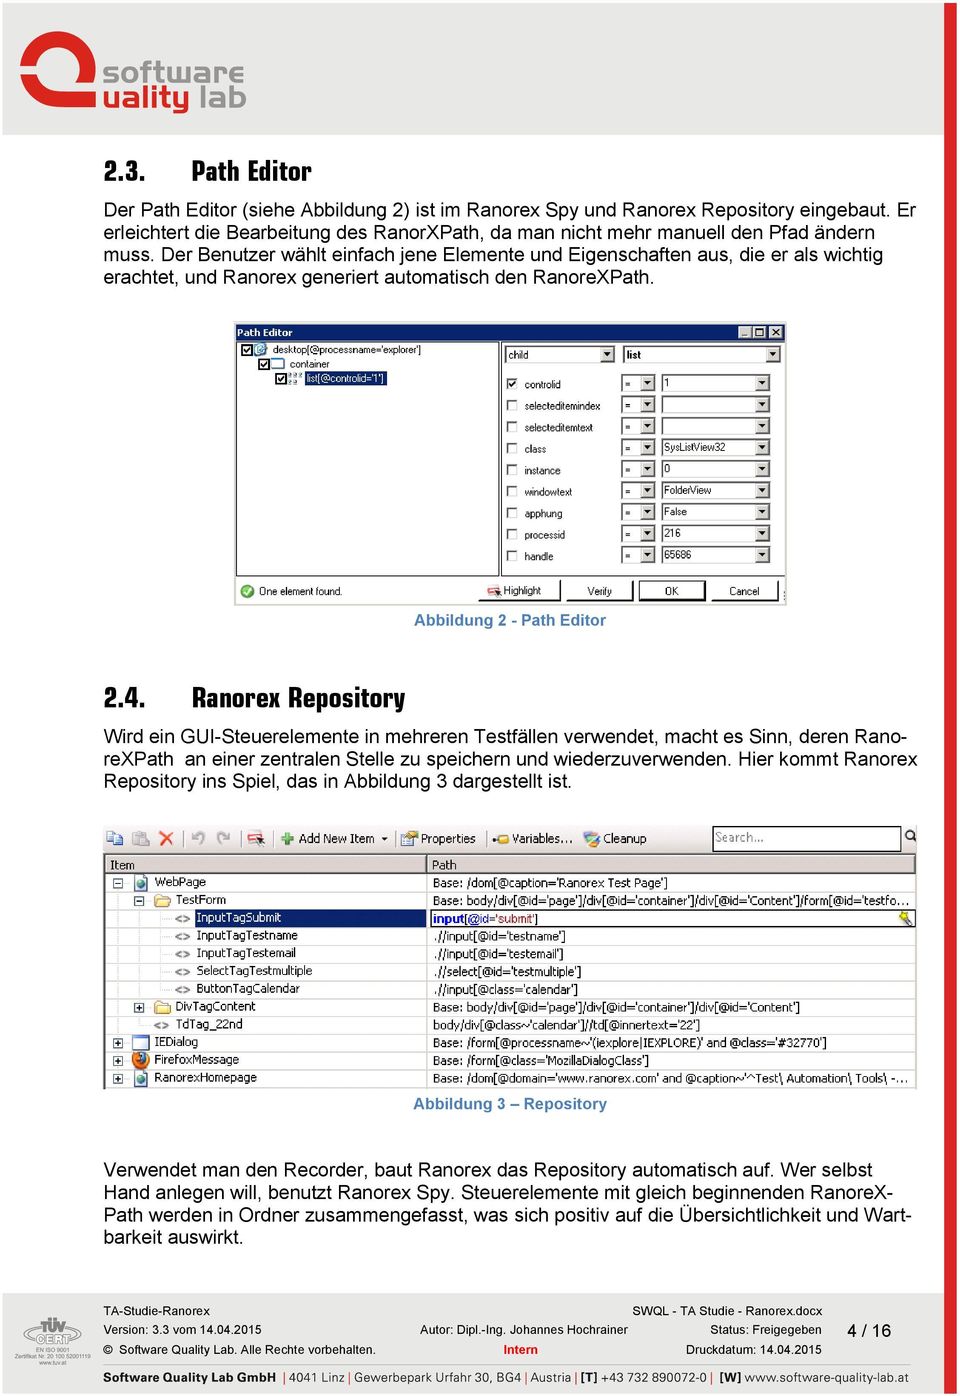 Ranorex Repository Wird ein GUI-Steuerelemente in mehreren Testfällen verwendet, macht es Sinn, deren RanoreXPath an einer zentralen Stelle zu speichern und wiederzuverwenden.